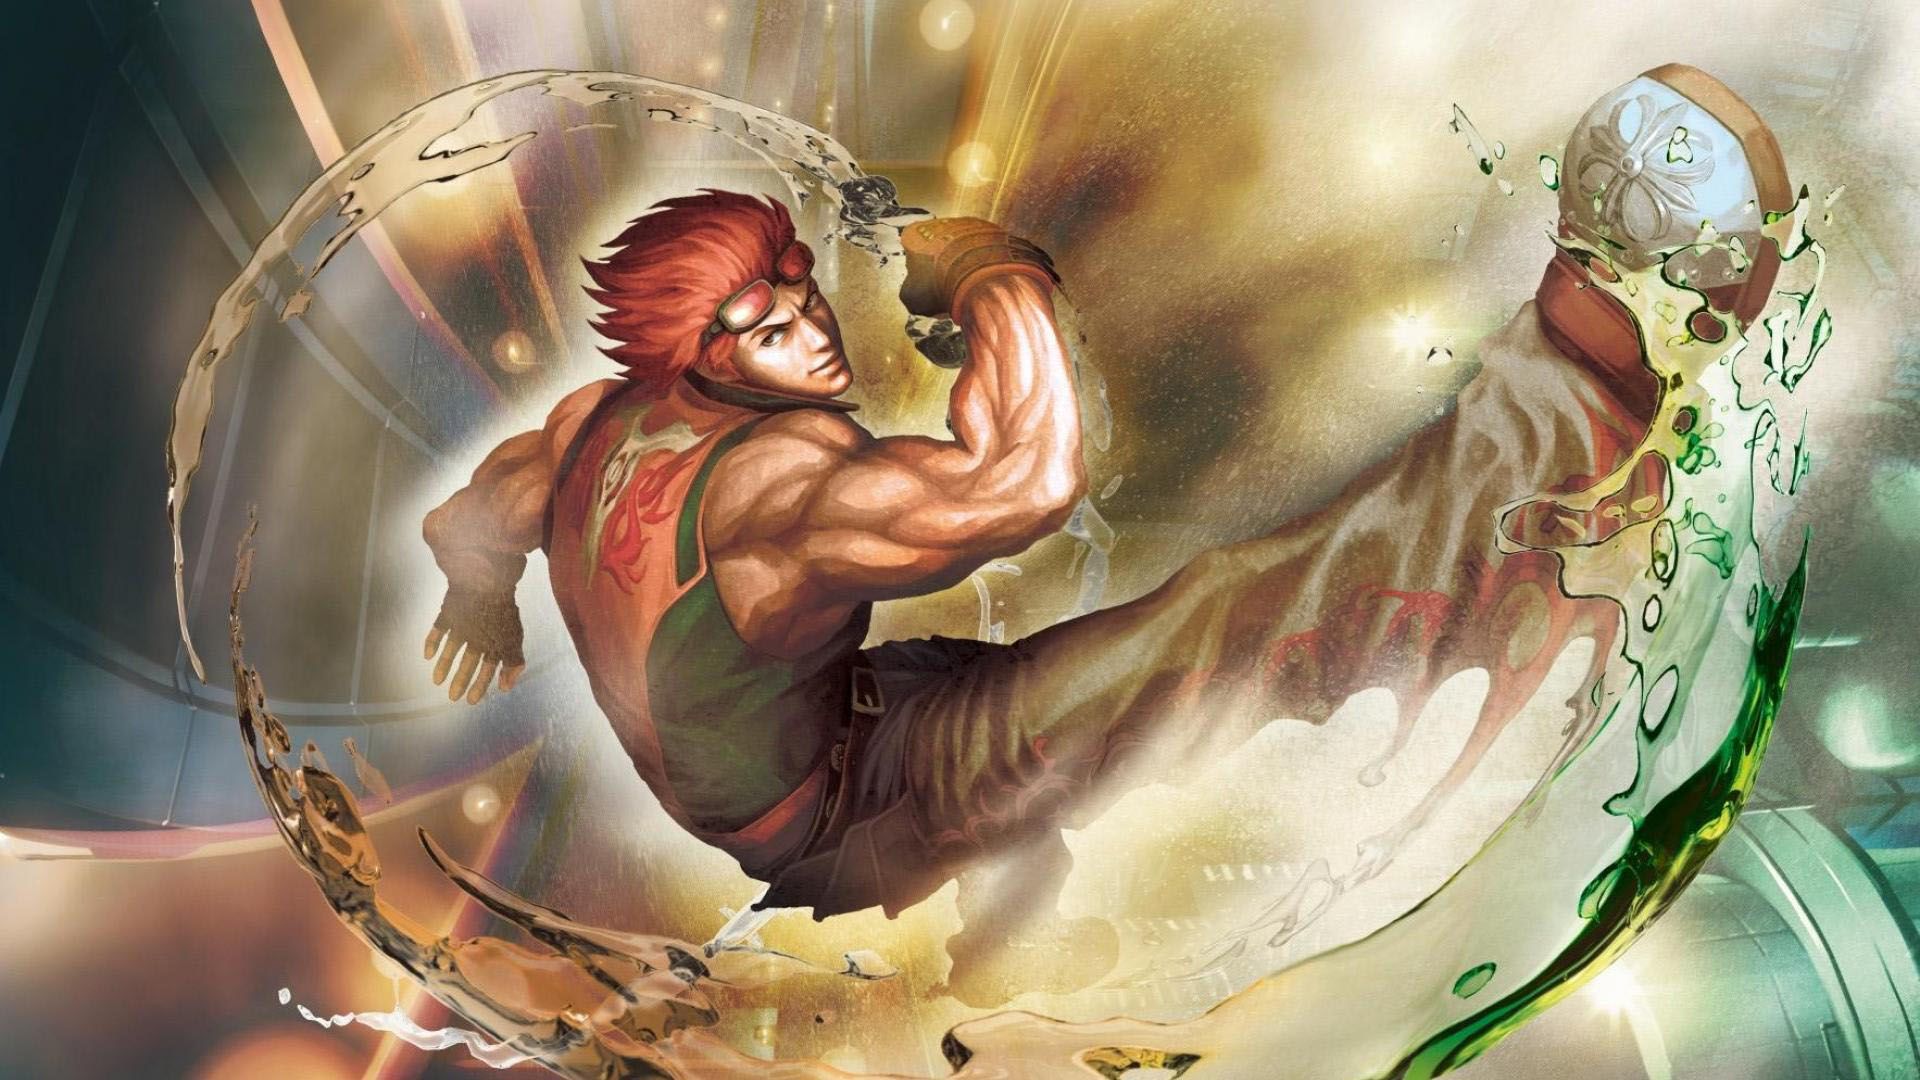 Hwoarang Wallpaper - Street Fighter X Tekken Hwoarang , HD Wallpaper & Backgrounds